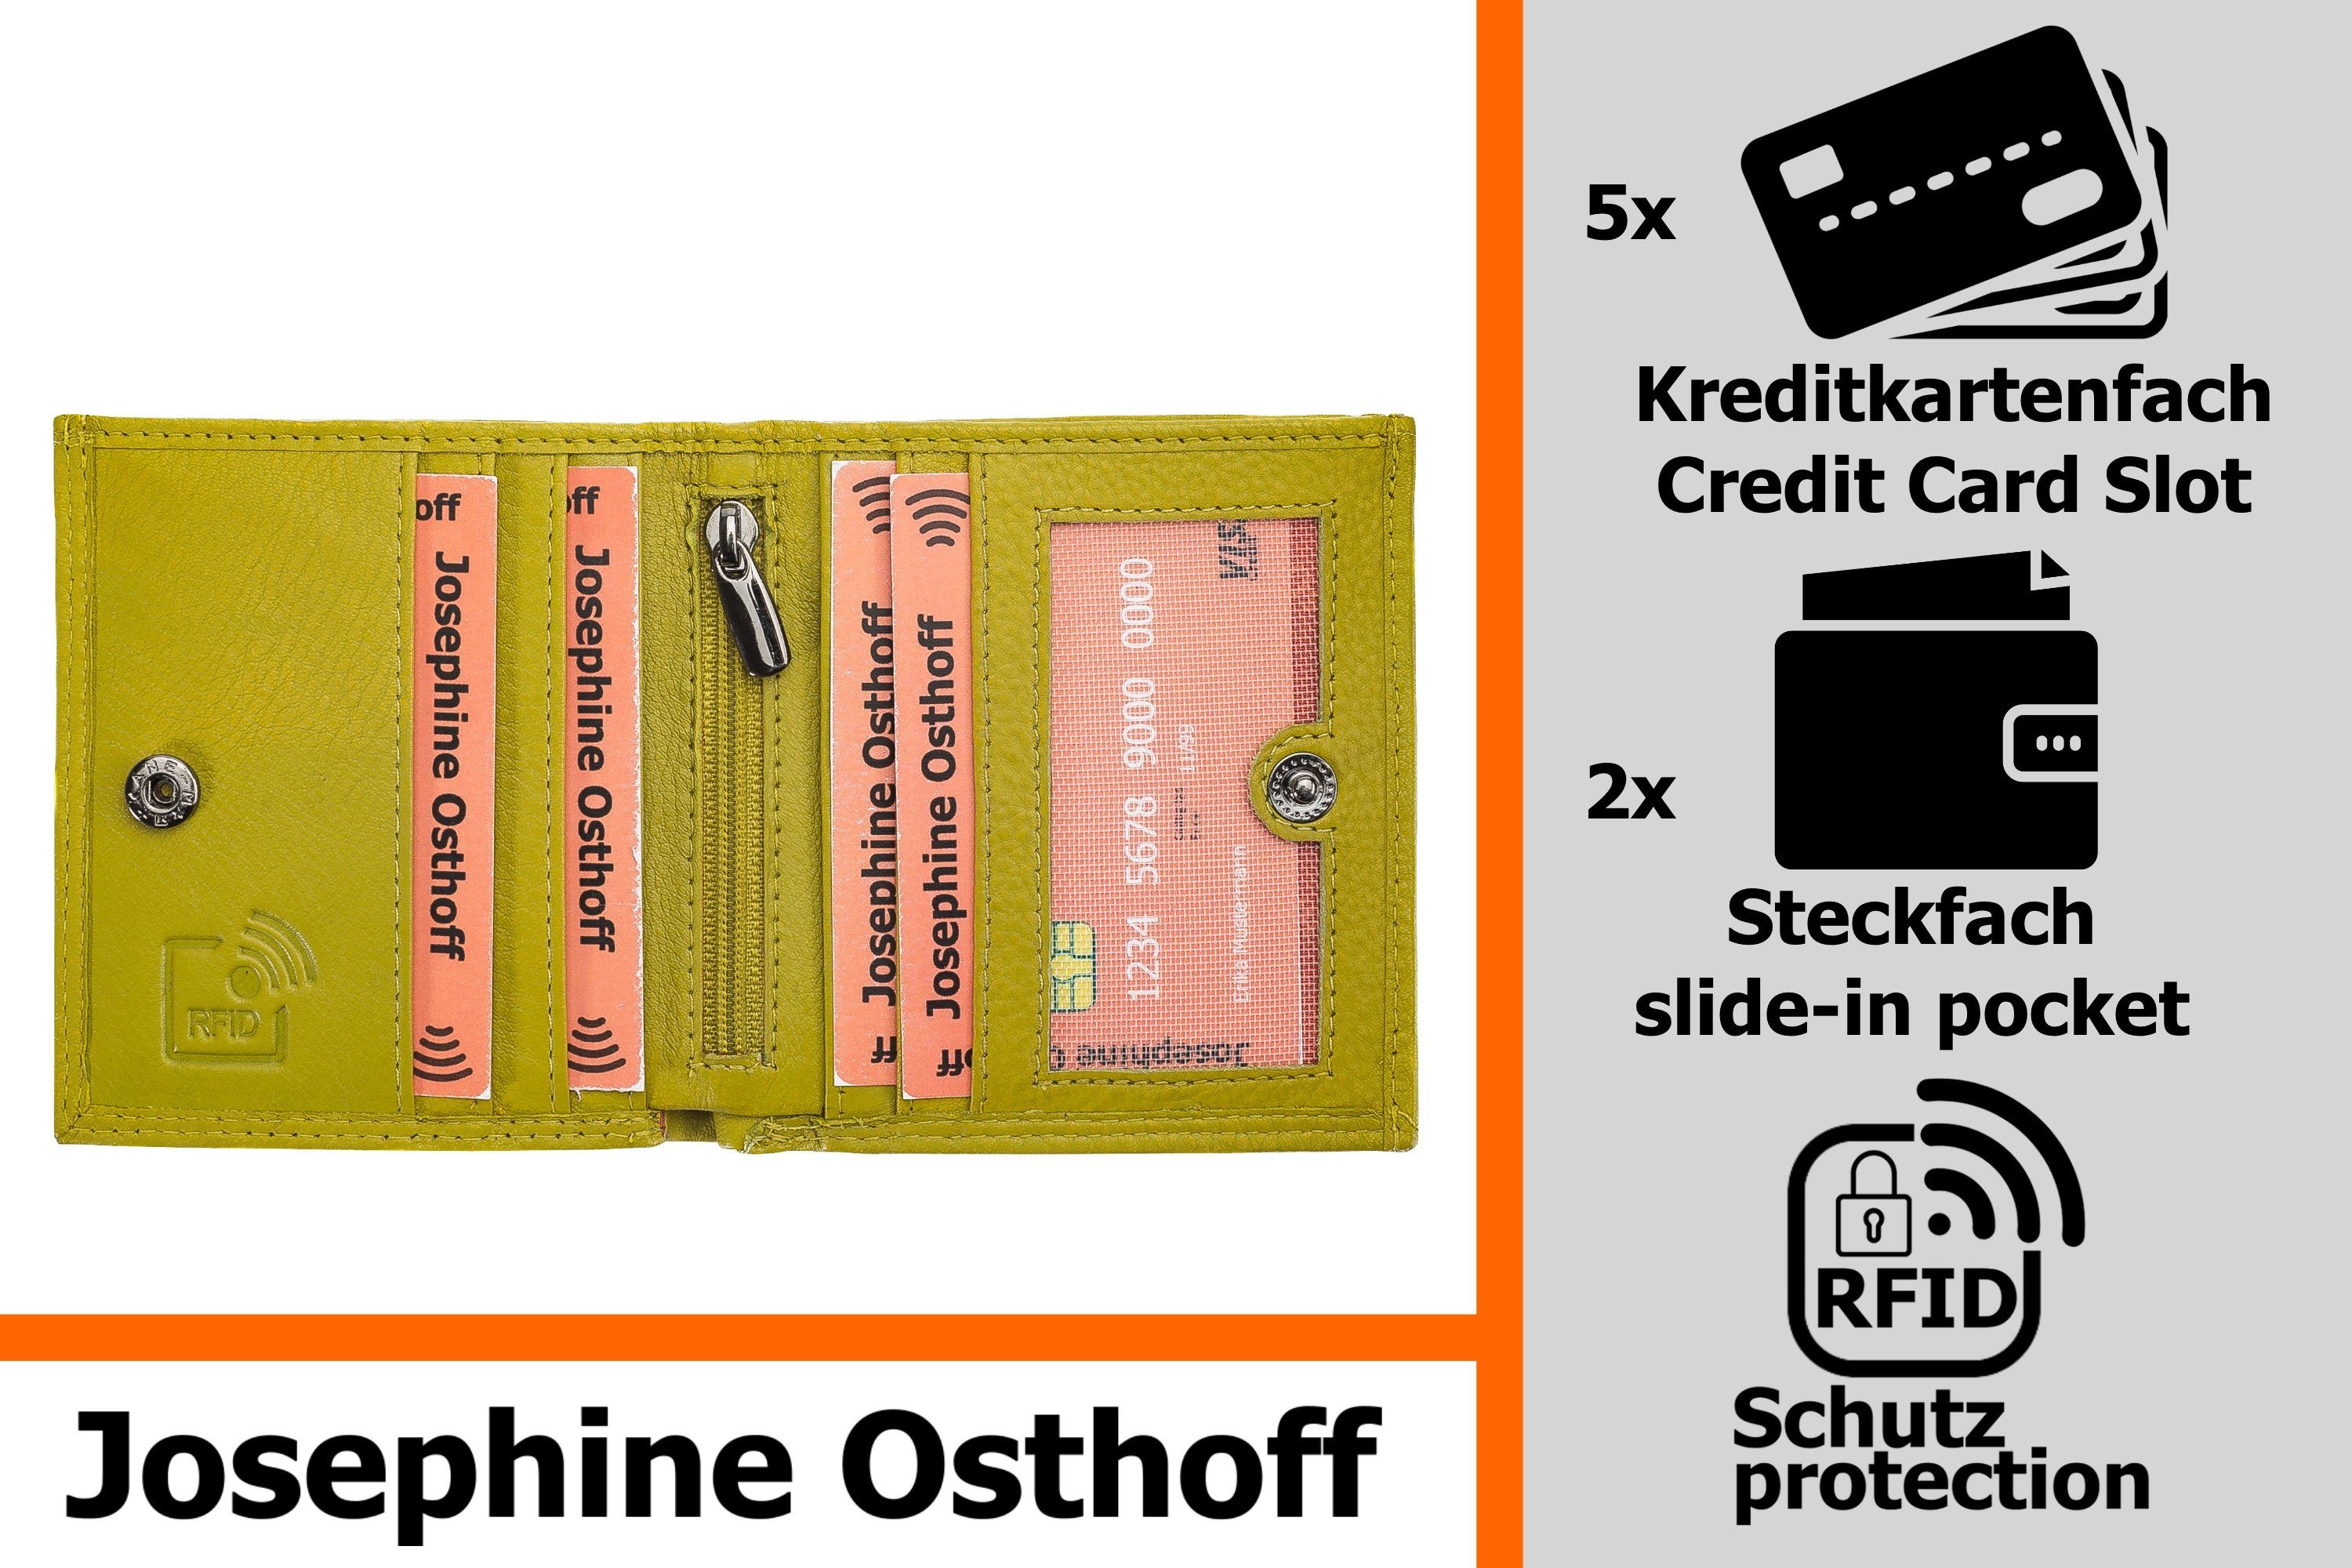 Josephine Schachtel Geldbörse limone Geldbörse Wiener Osthoff